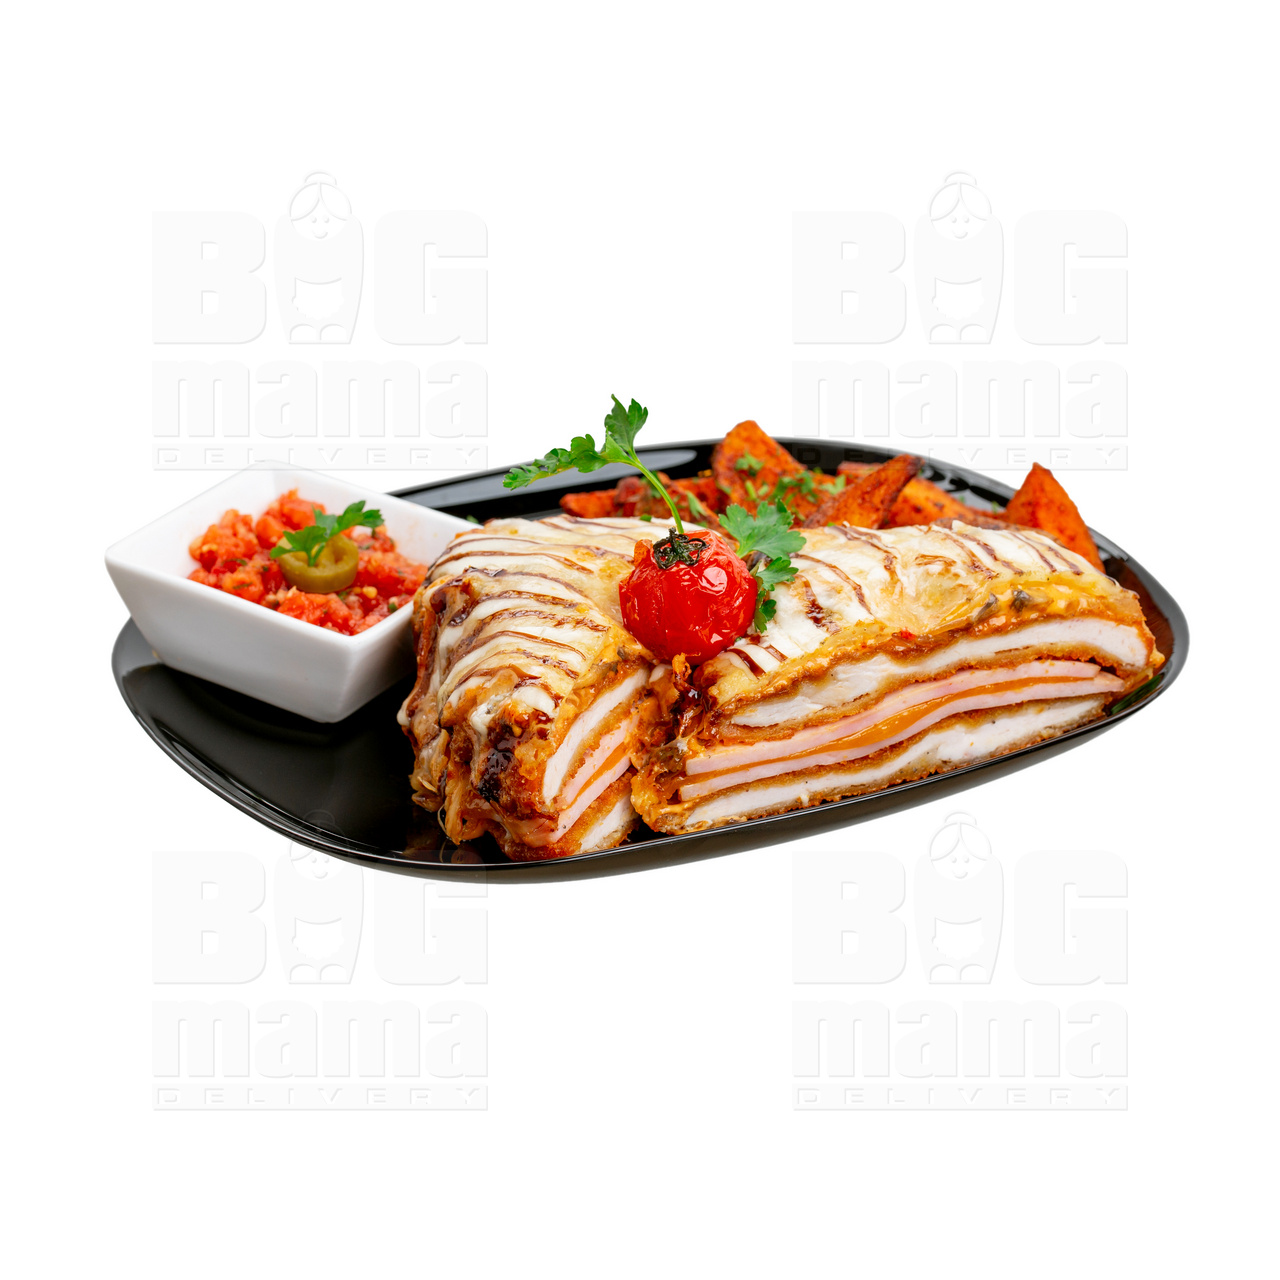 Product #258 image - Tort secuiesc cu cartofi steak și sos salsa